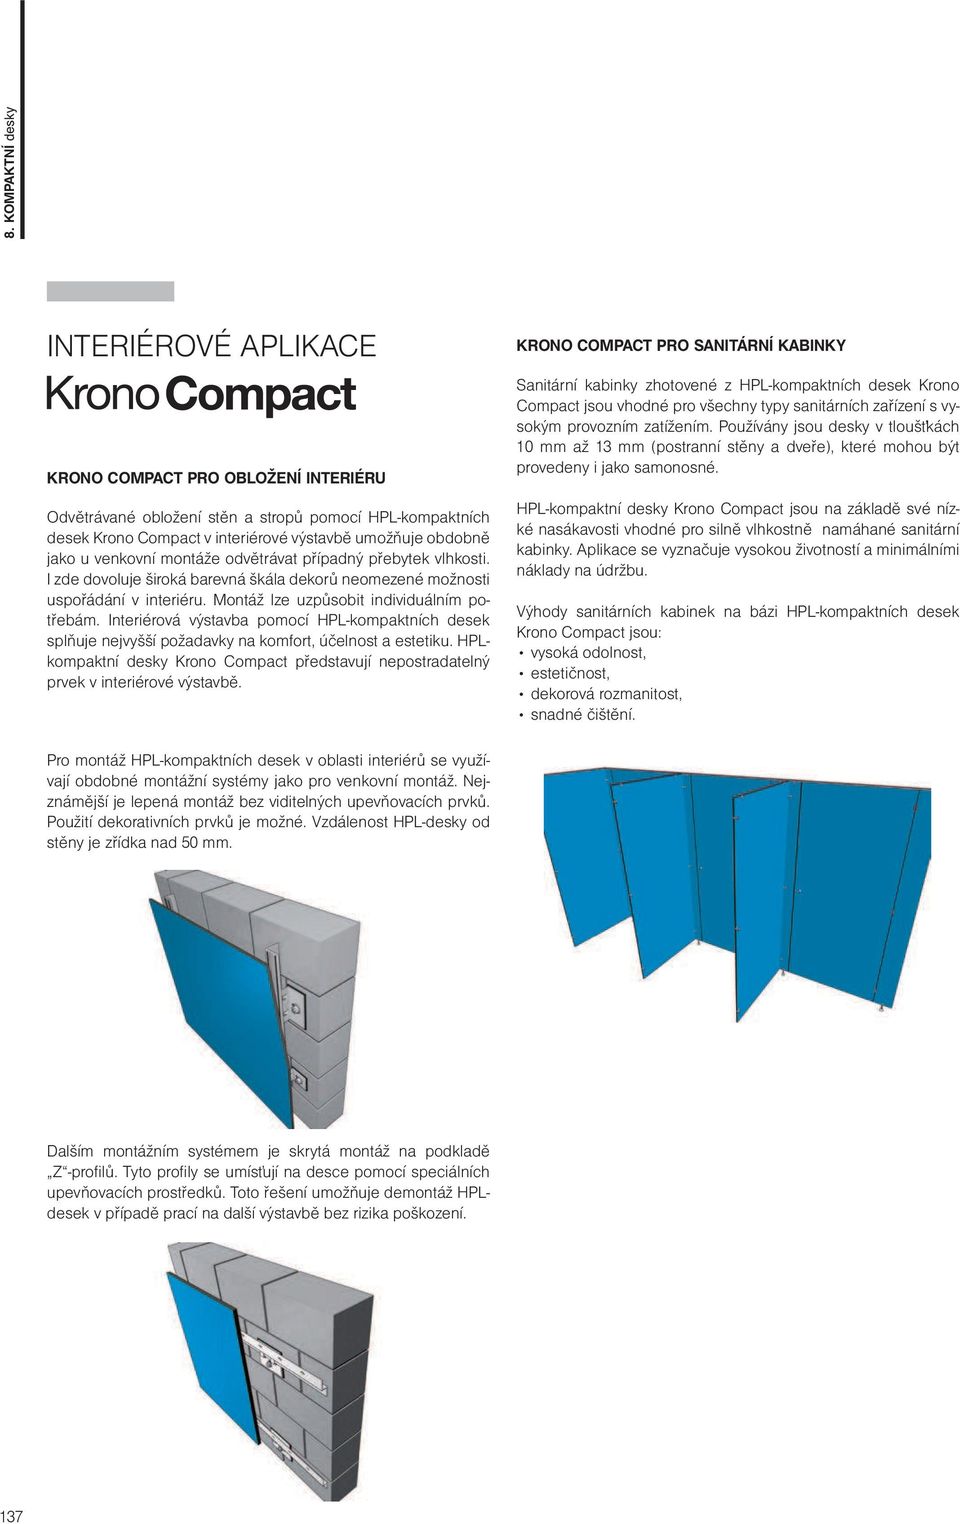 Interiérová výstavba pomocí HPL-kompaktních desek splňuje nejvyšší požadavky na komfort, účelnost a estetiku. HPLkompaktní desky Krono Compact představují nepostradatelný prvek v interiérové výstavbě.